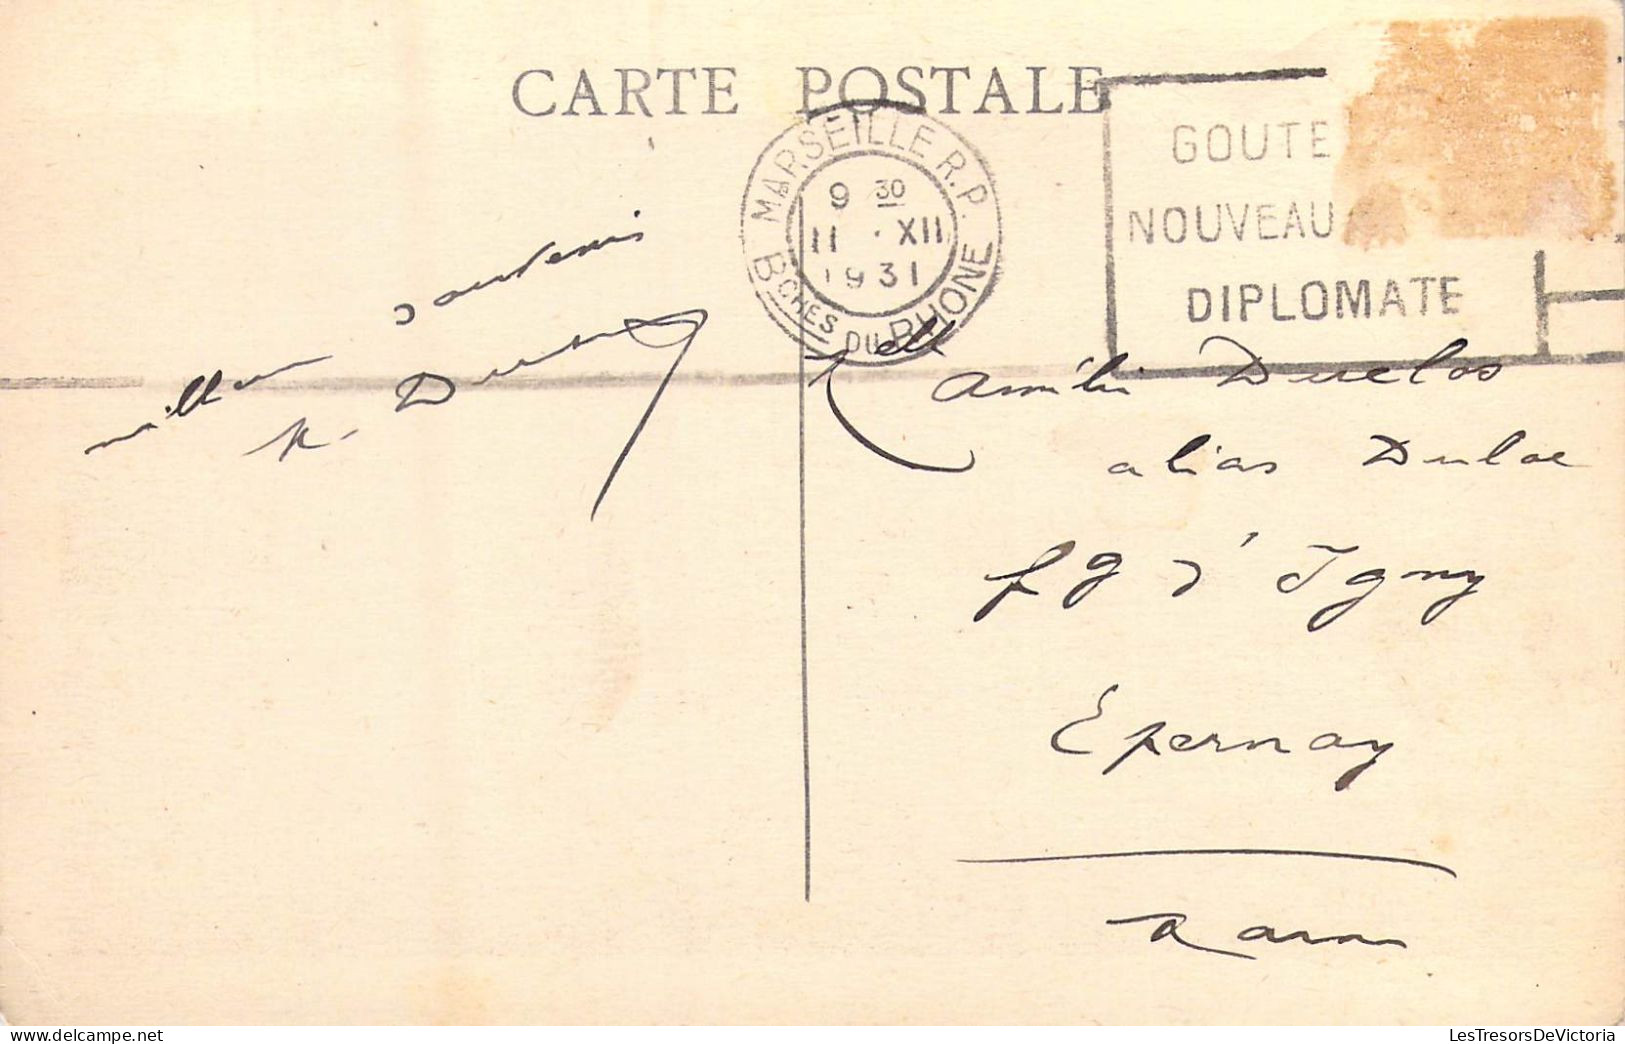 FRANCE - 13 - Marseille - Courrier Rentrant Au Port - Carte Postale Ancienne - Vecchio Porto (Vieux-Port), Saint Victor, Le Panier